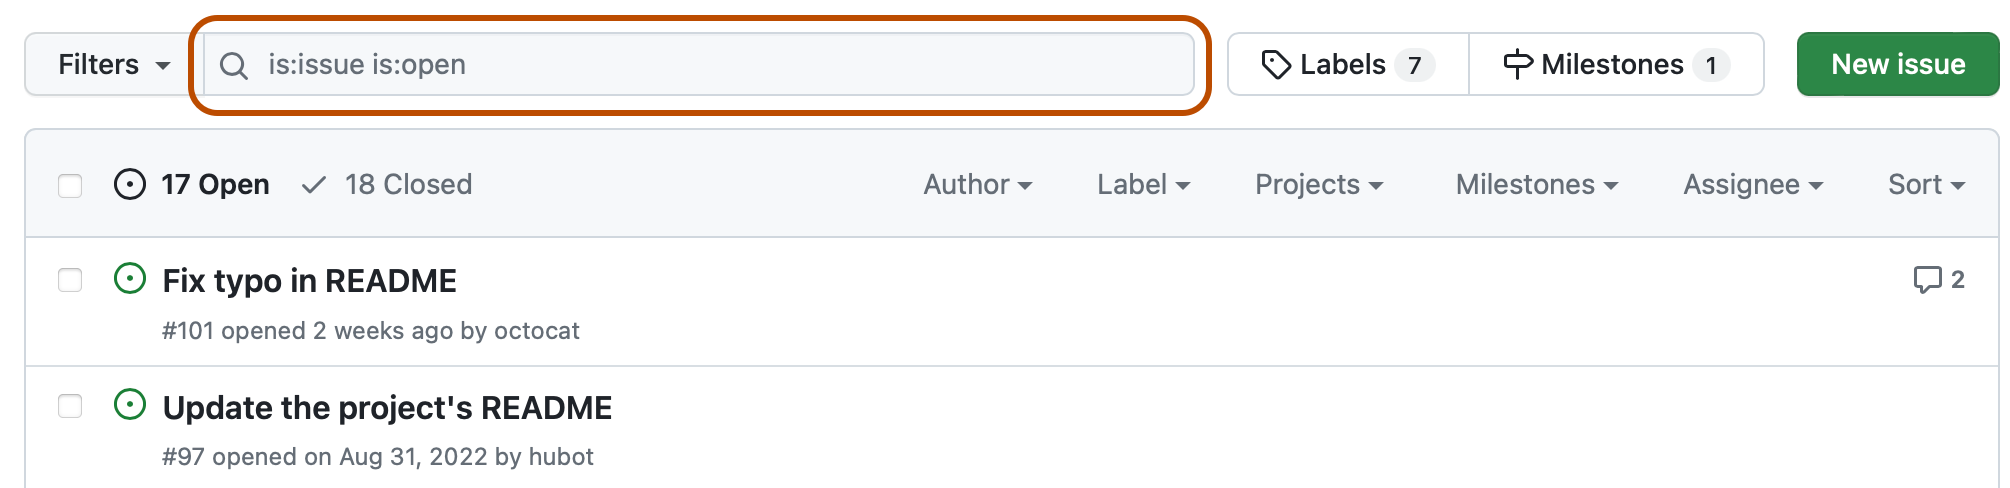 リポジトリの issue の一覧のスクリーンショット。 一覧の上には、"is:issue is:open" というクエリを含む検索フィールドが濃いオレンジで囲まれています。